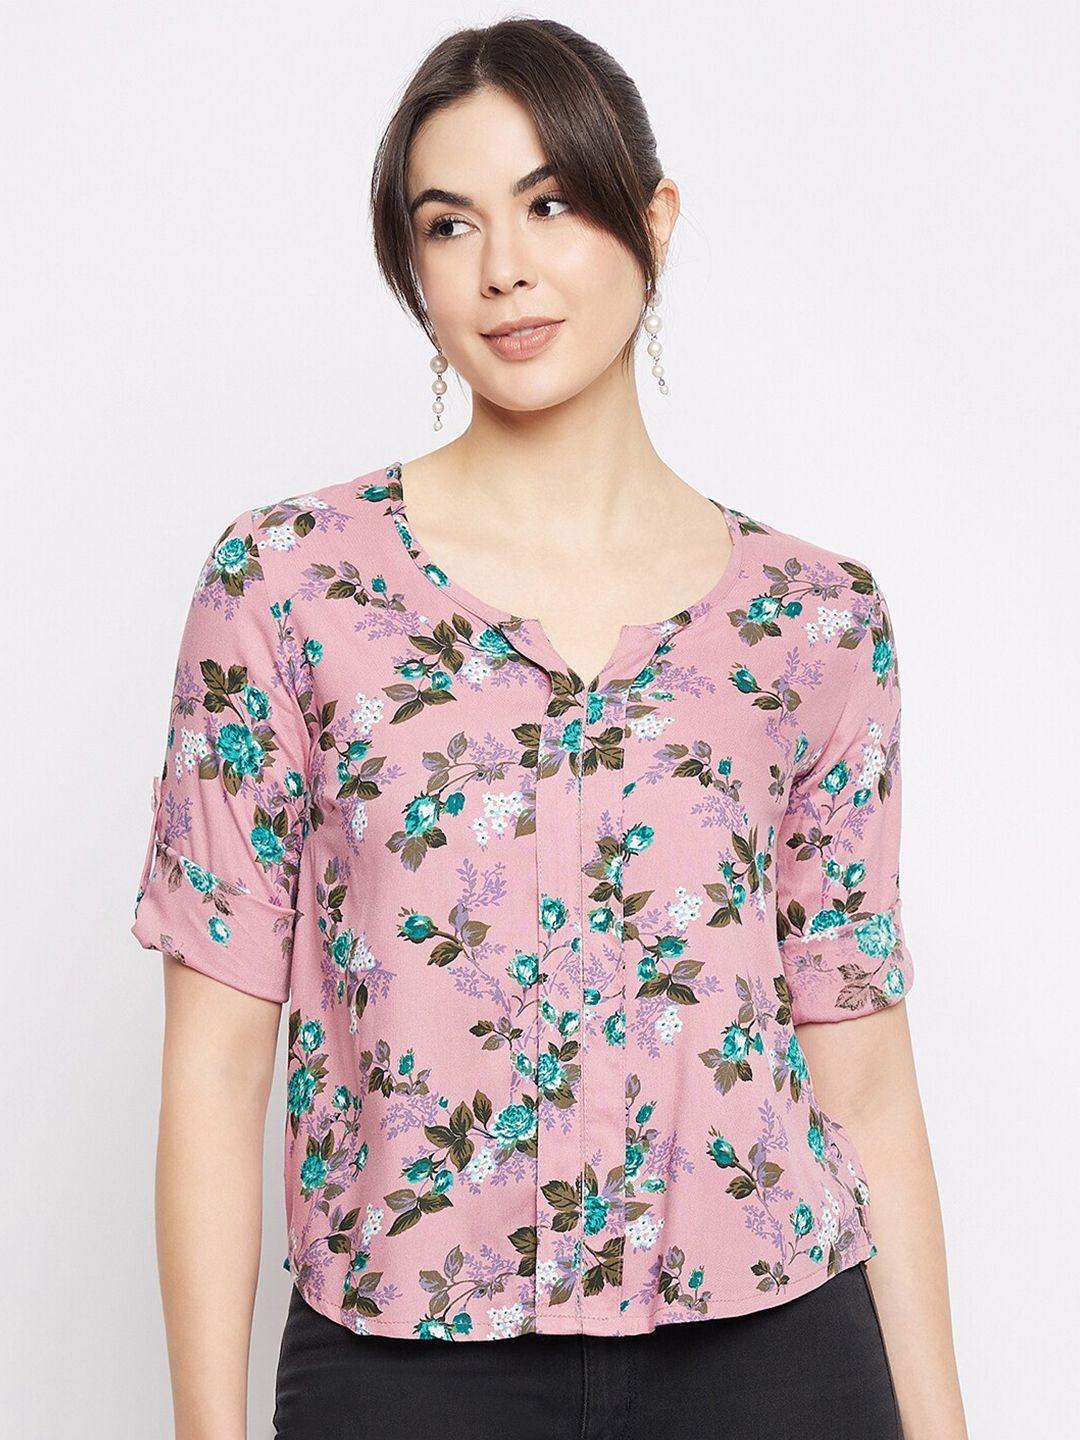 mayra floral print shirt style top